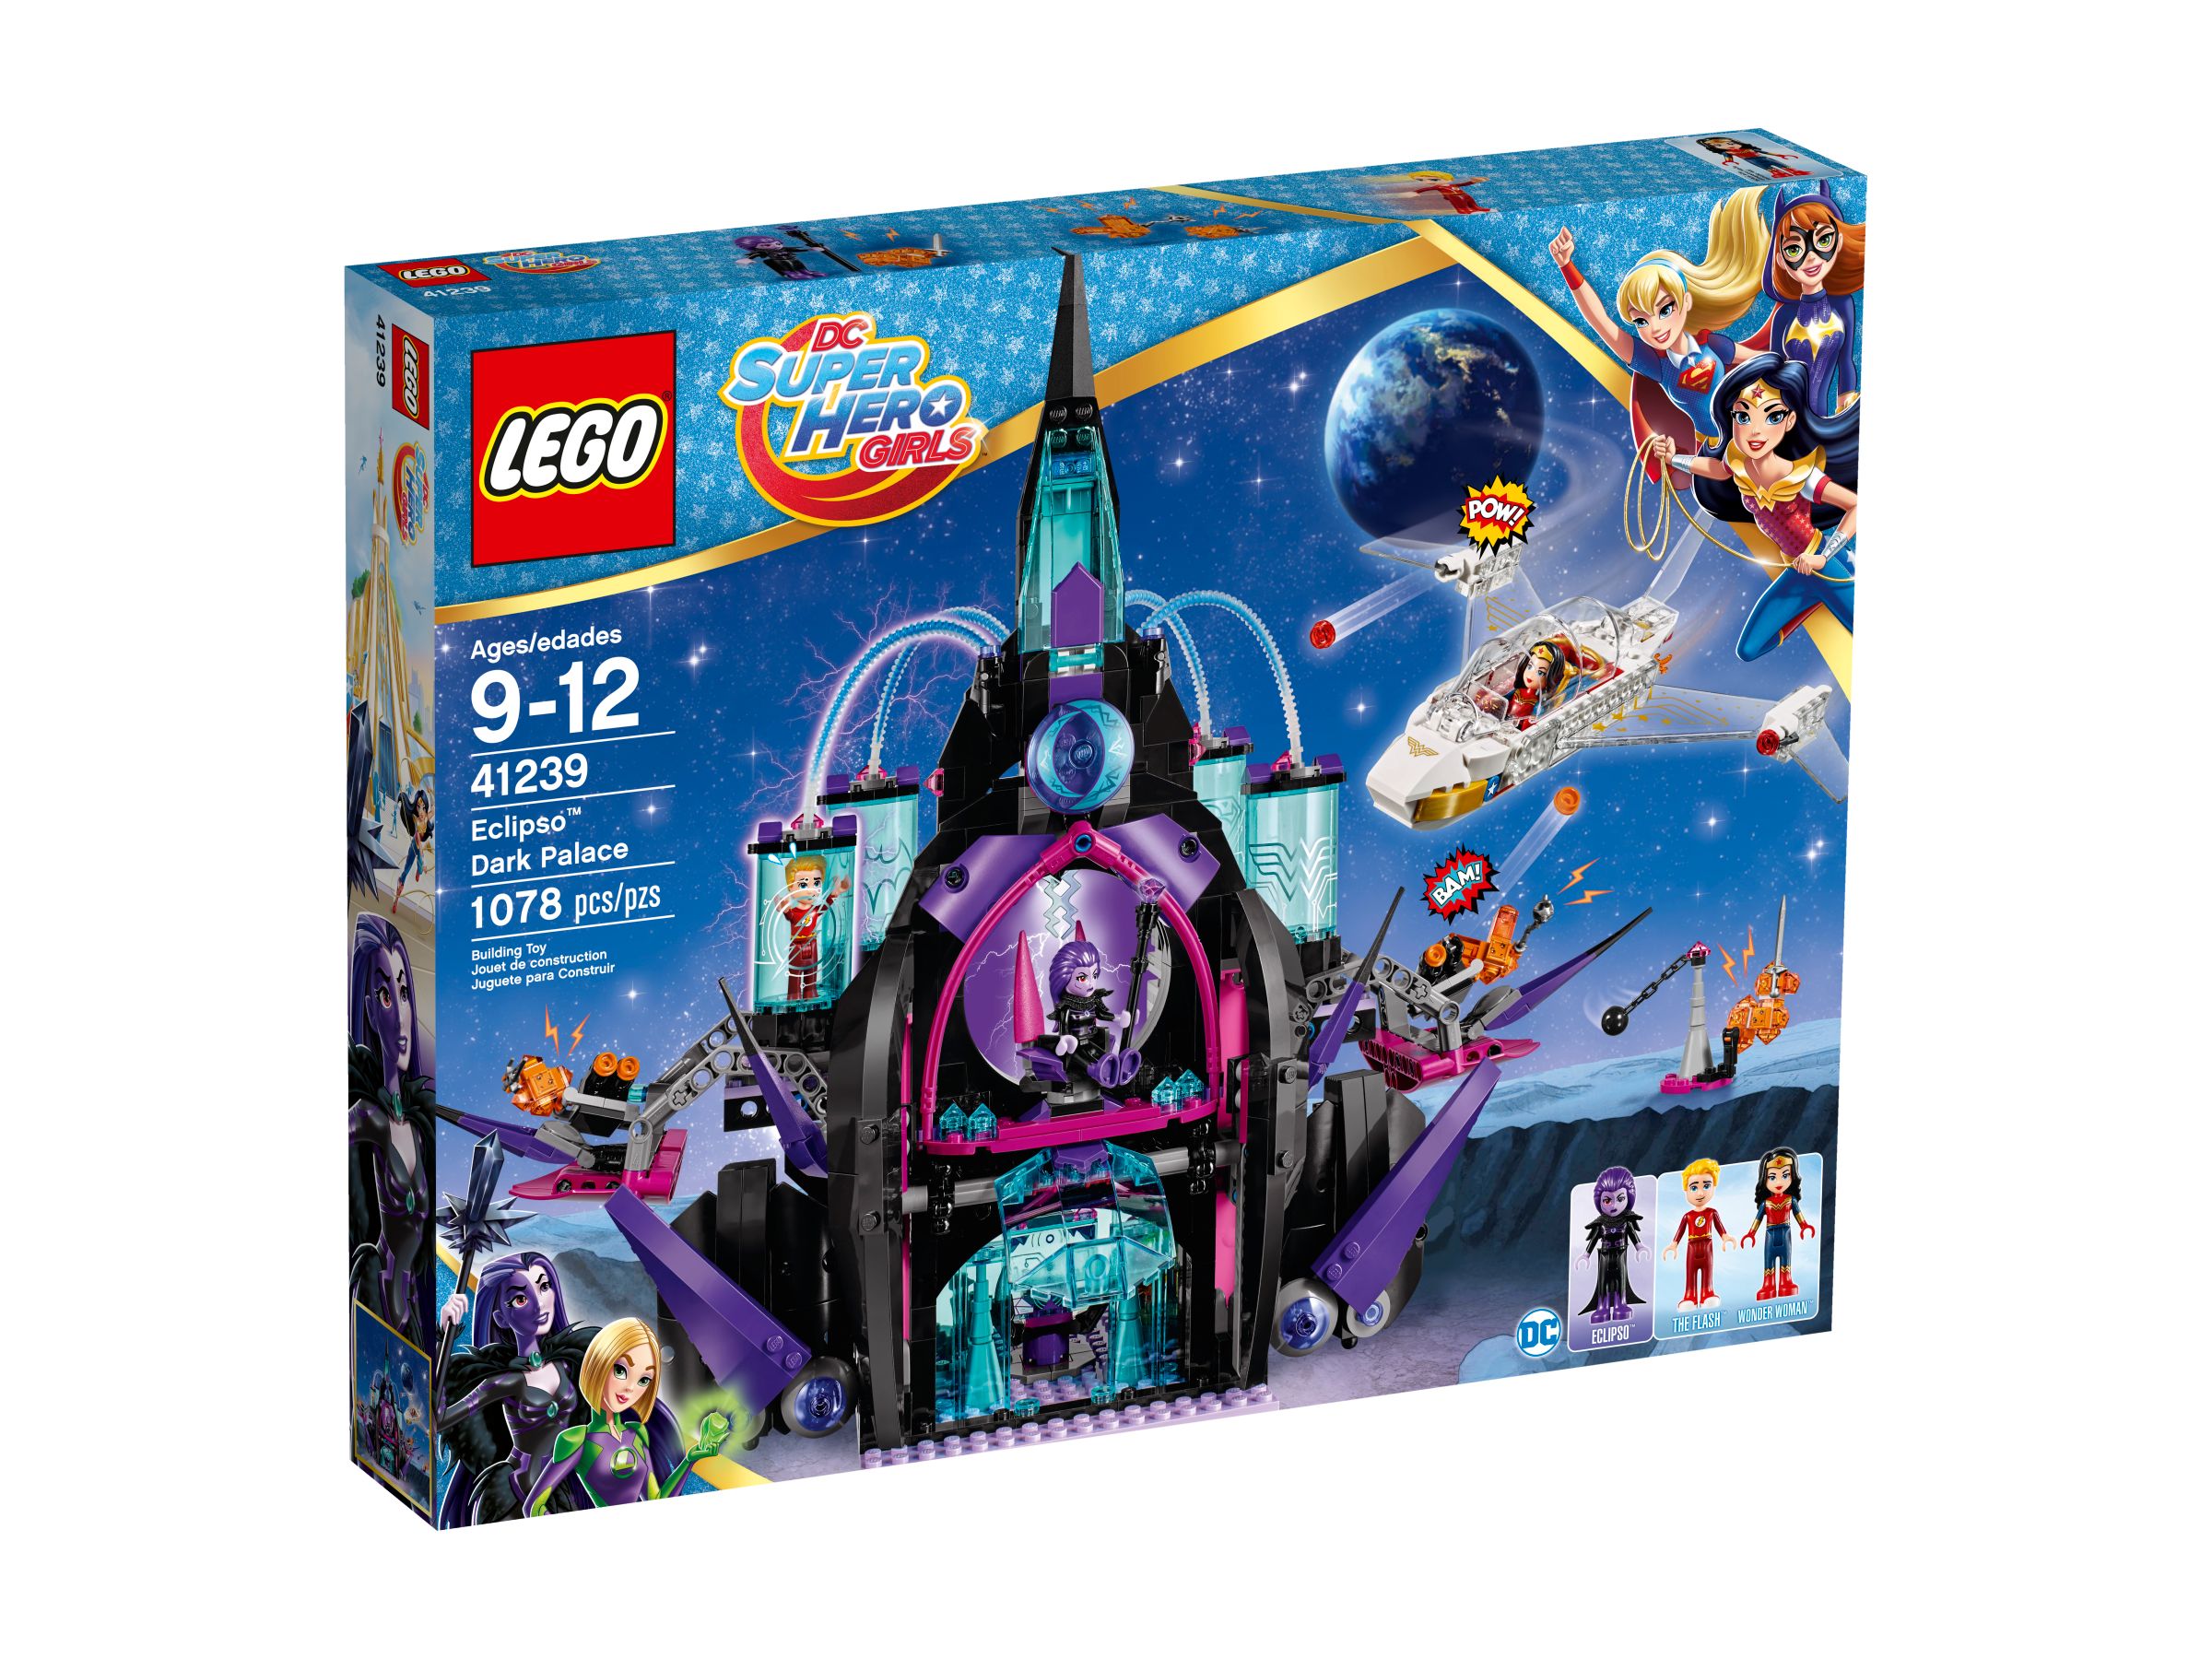 LEGO DC Super Hero Girls 41239 Der dunkle Palast von Eclipso™ LEGO_41239_alt1.jpg